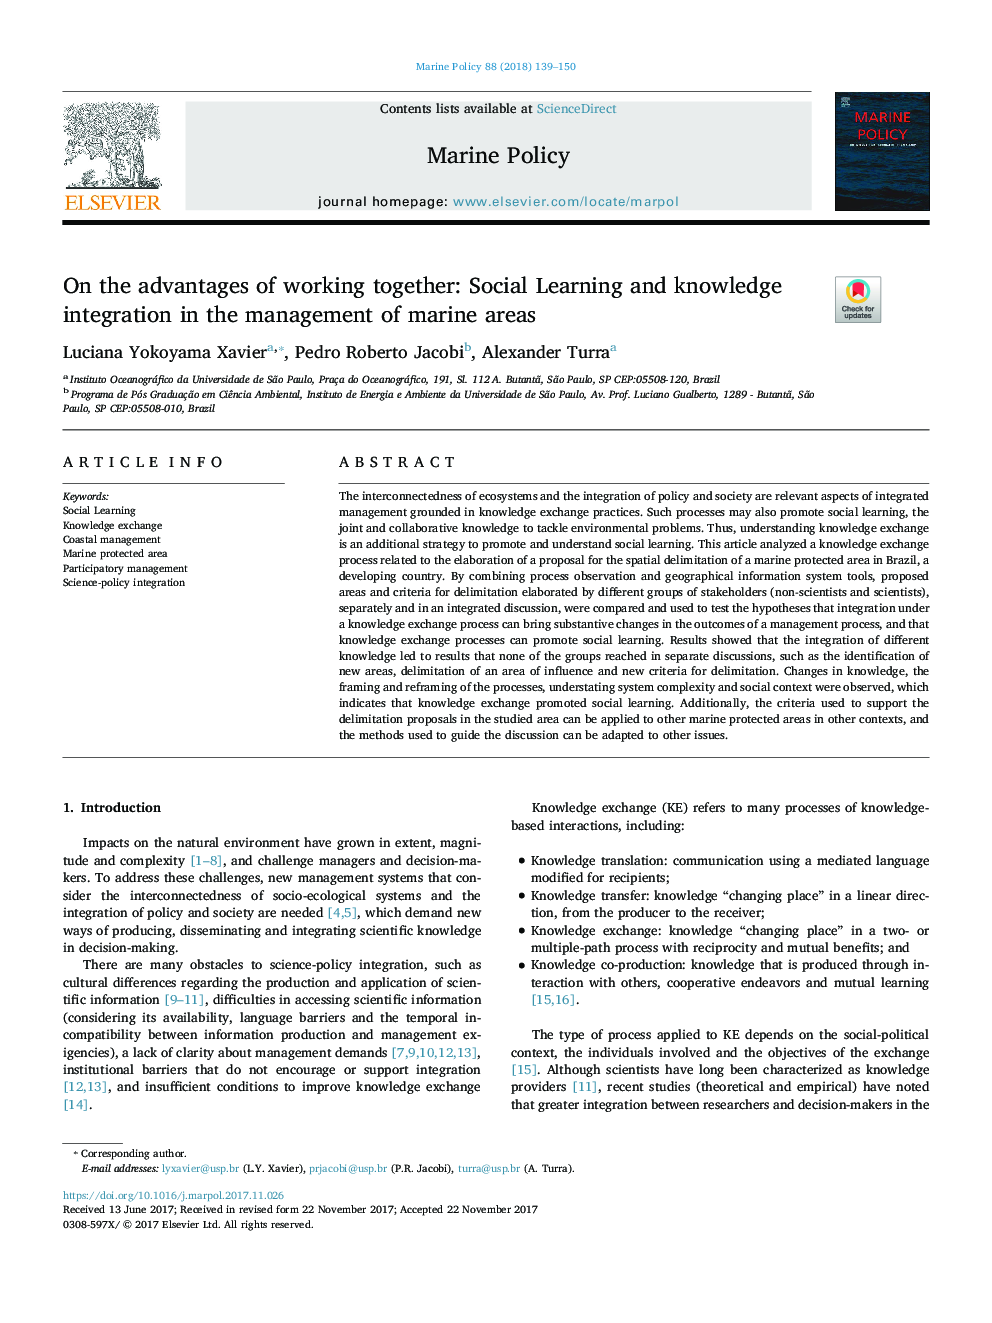 در مزایای کار با هم: یادگیری اجتماعی و ادغام دانش در مدیریت مناطق دریایی 